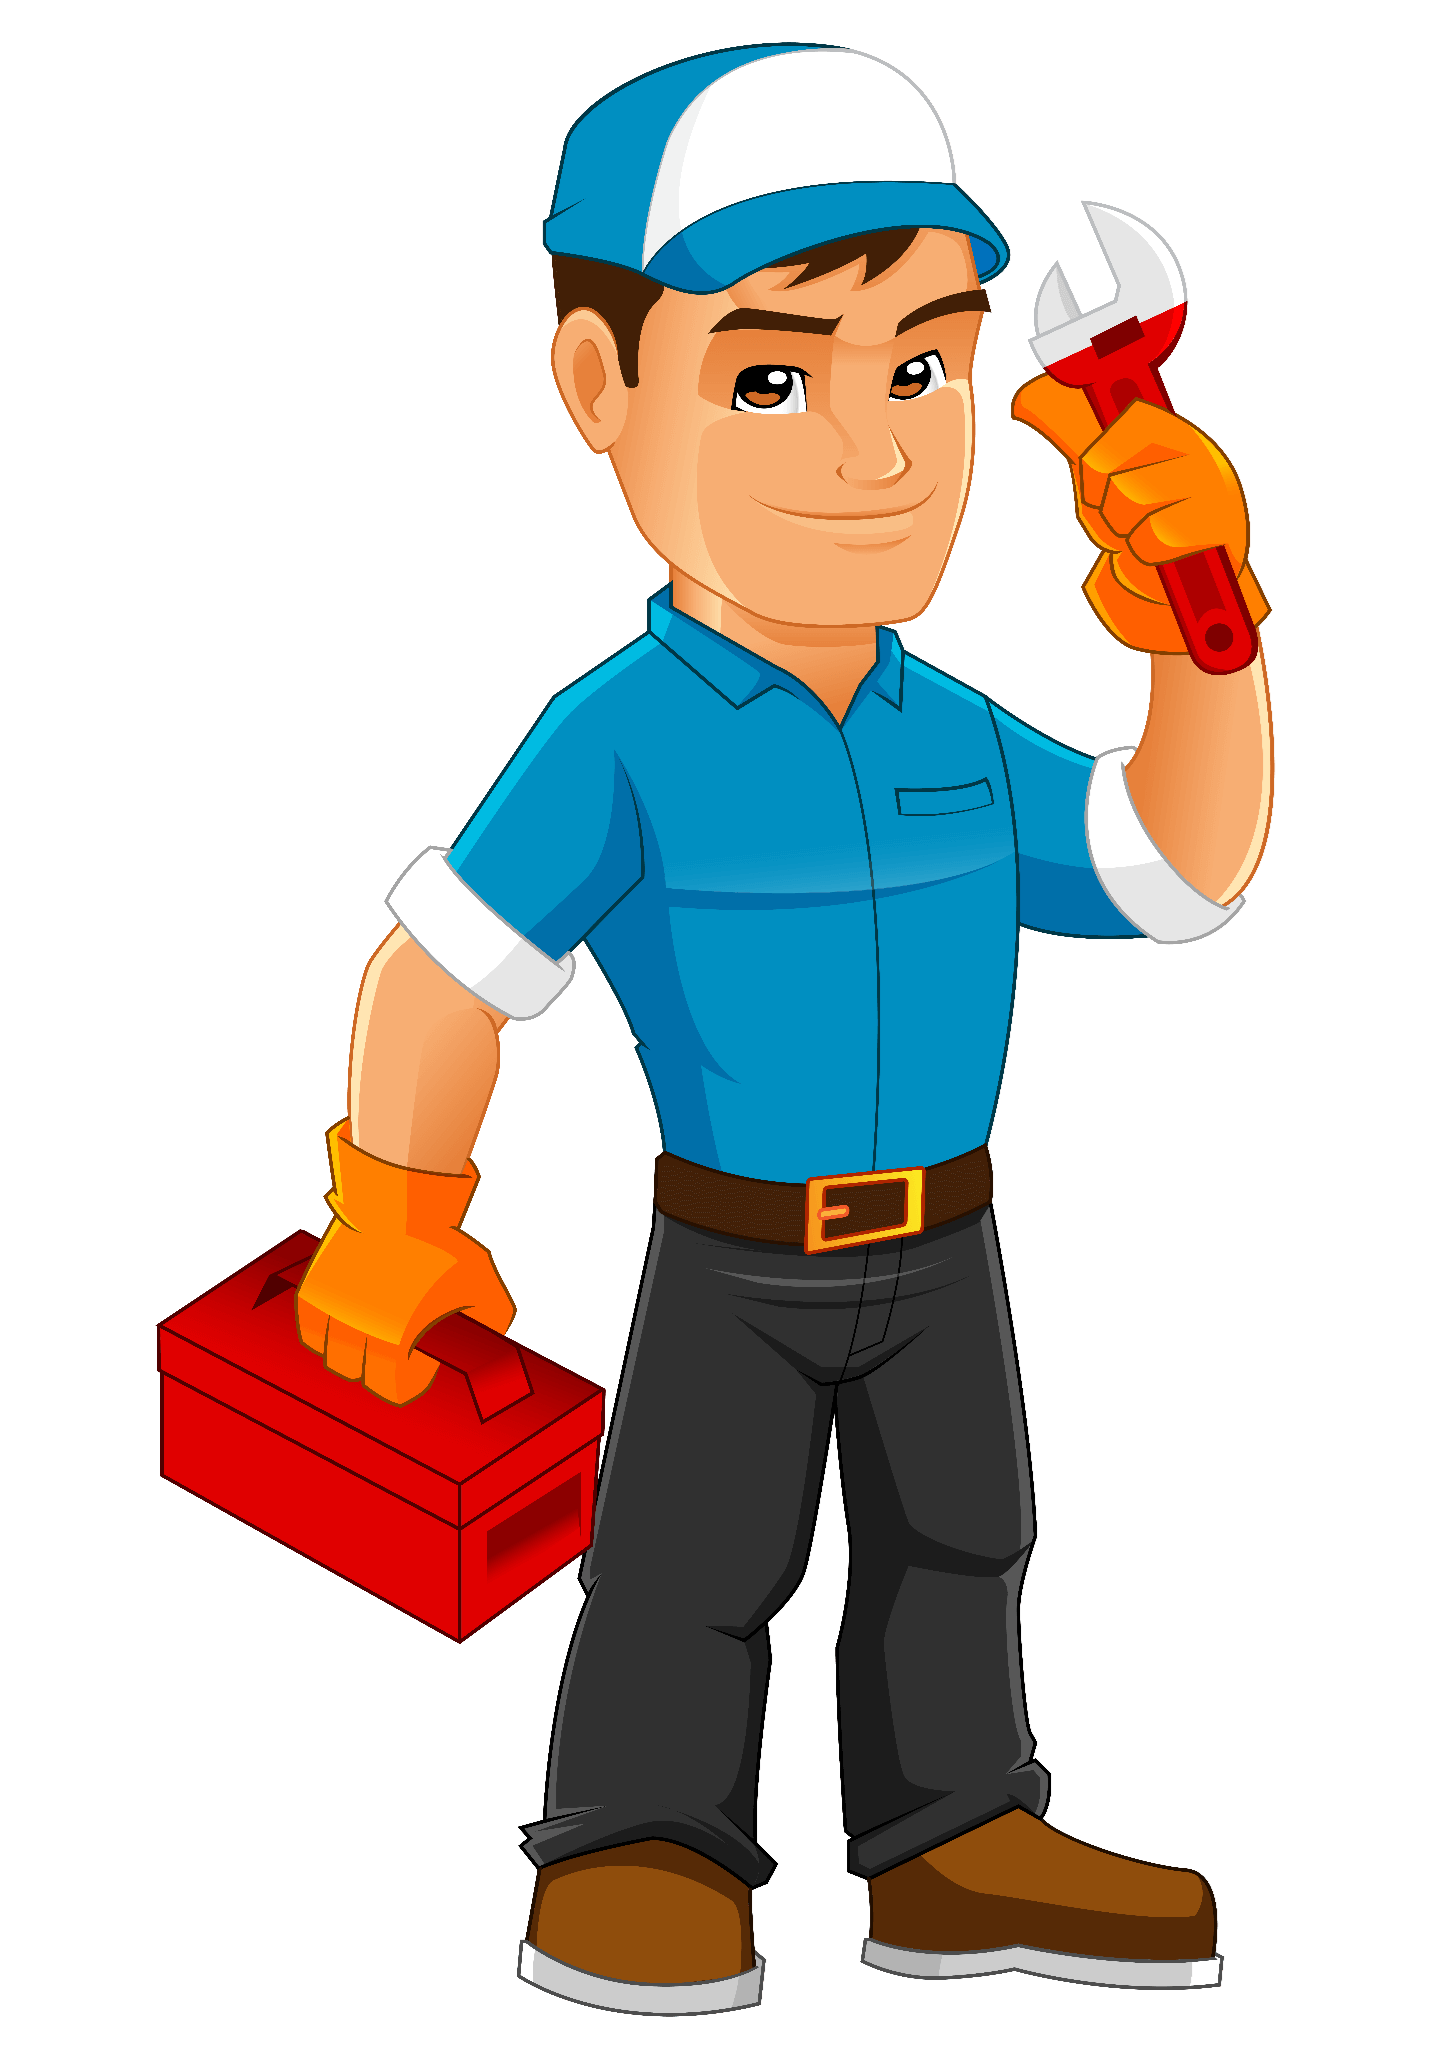 تعمیر و نگهداری سیستم های آتش نشانی - سرویس سیستم های ایمنی و آتش نشانی